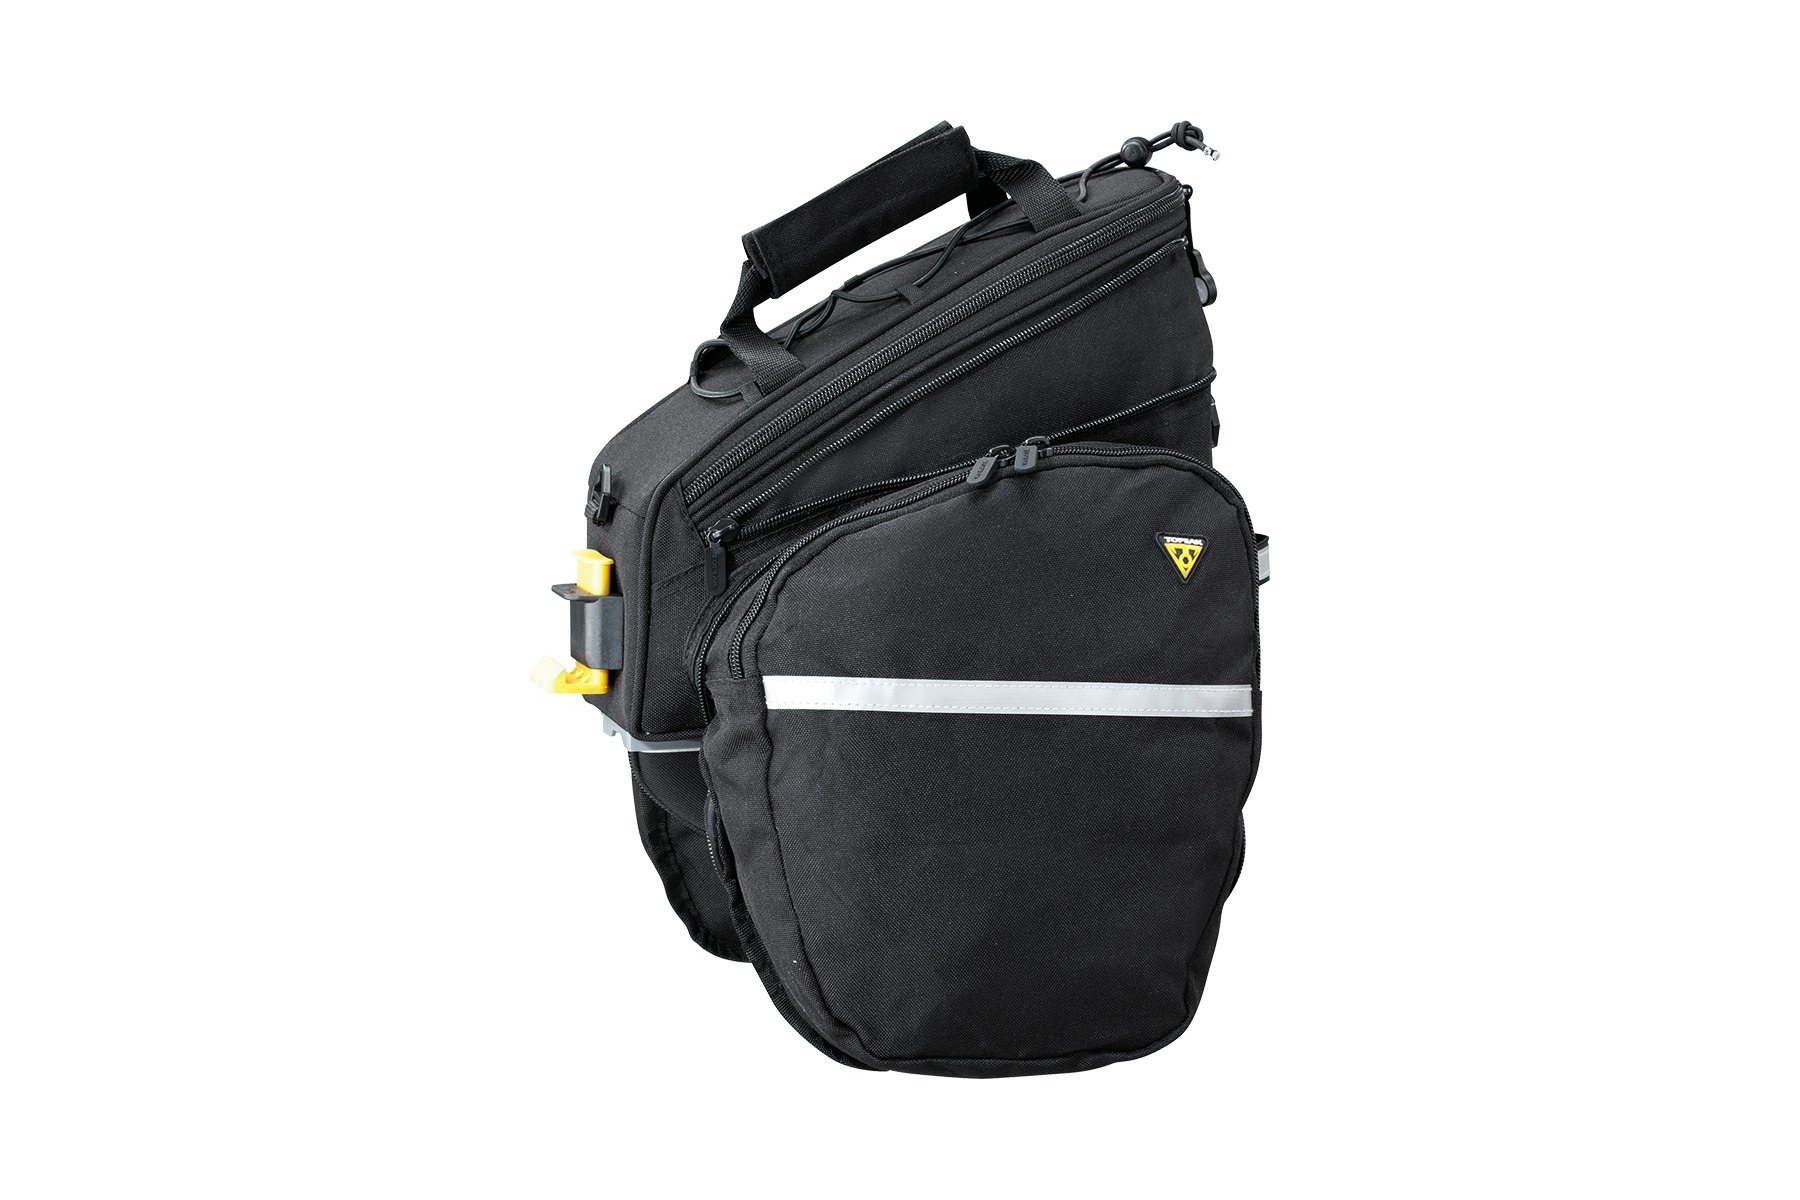 Topeak Trunk Bag RX DXP with Rigid Molded Expanding Side Pannier Panels 7.3Litre Black/Silver